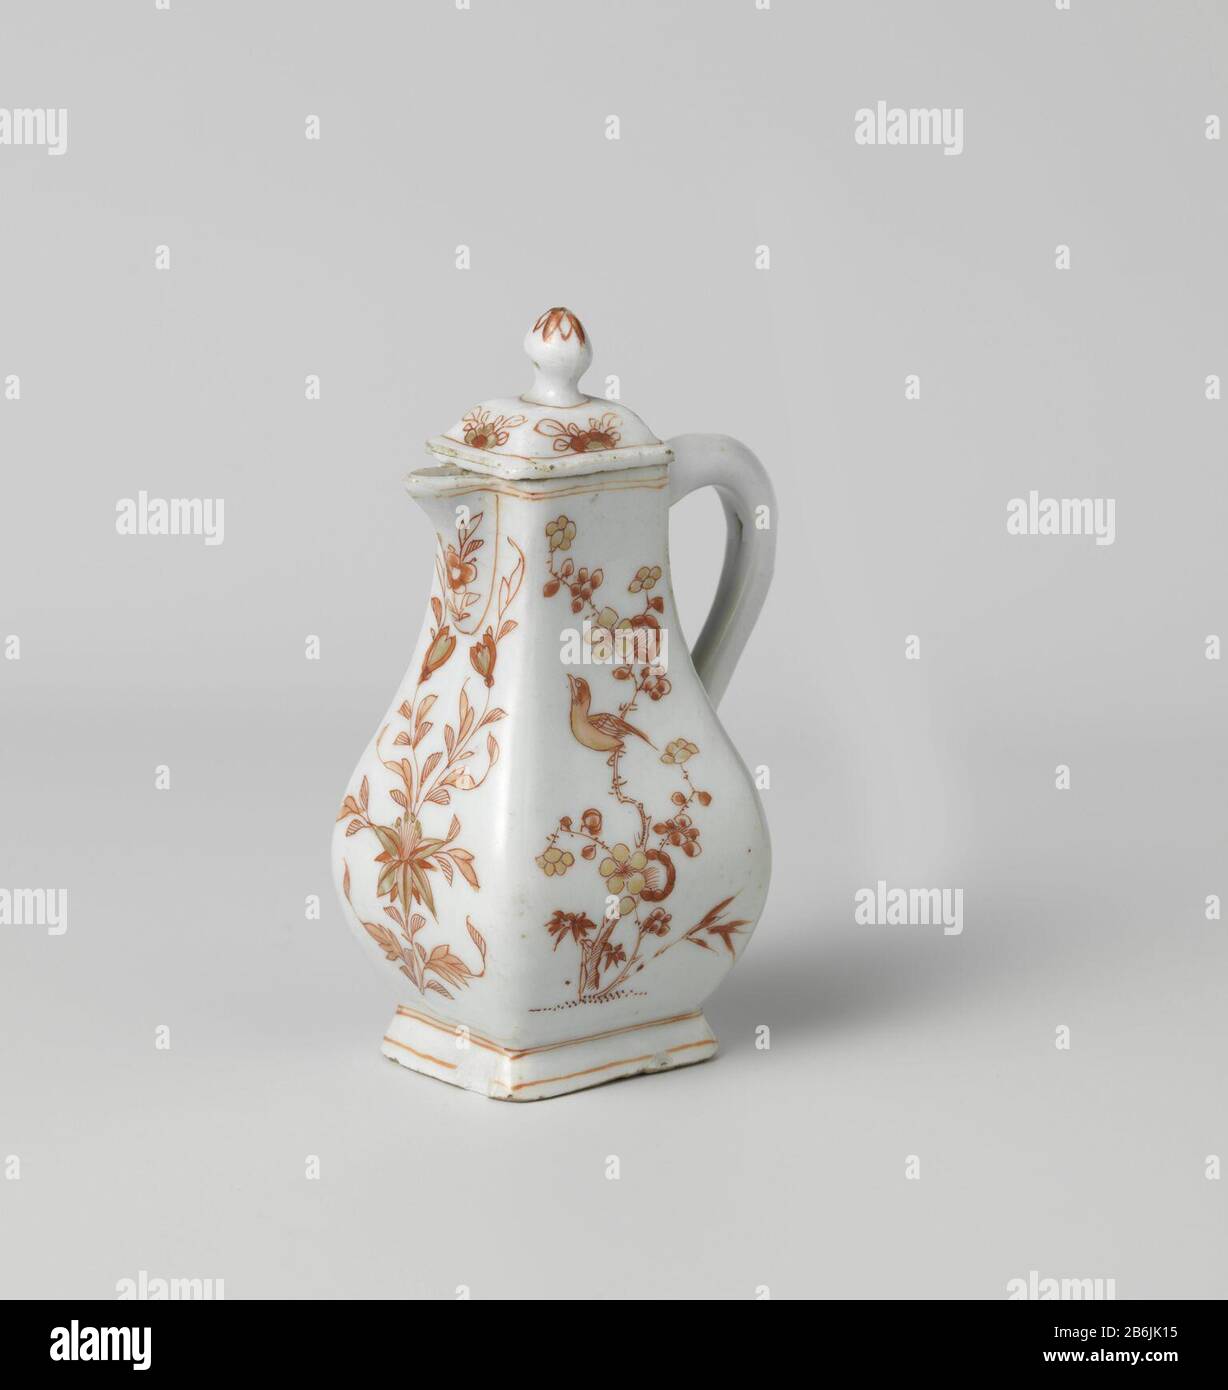 Cover milk jug with flower sprays, butterflies and birds Deksel van melkkan van porselein, beschilderd op het glazuur in rood en goud. Vier keer een bloem met bladeren afgebeeld en een bloemrozet op de knop. Melk en bloed. Manufacturer : pottenbakker: anoniemPlaats manufacture: China Dating: ca. 1700 - ca. 1724School / stijl: Qing-dynastie (1644-1912) / Kangxi-periode (1662-1722) / Yongzheng-periode (1723-1735) Physical kenmerken: porselein met emailkleuren en verguldsel Material: porselein glazuur email goud Techniek: draaiend bewerken / bakken / schilderen / emailleren / vergulden / glazuren Stock Photo